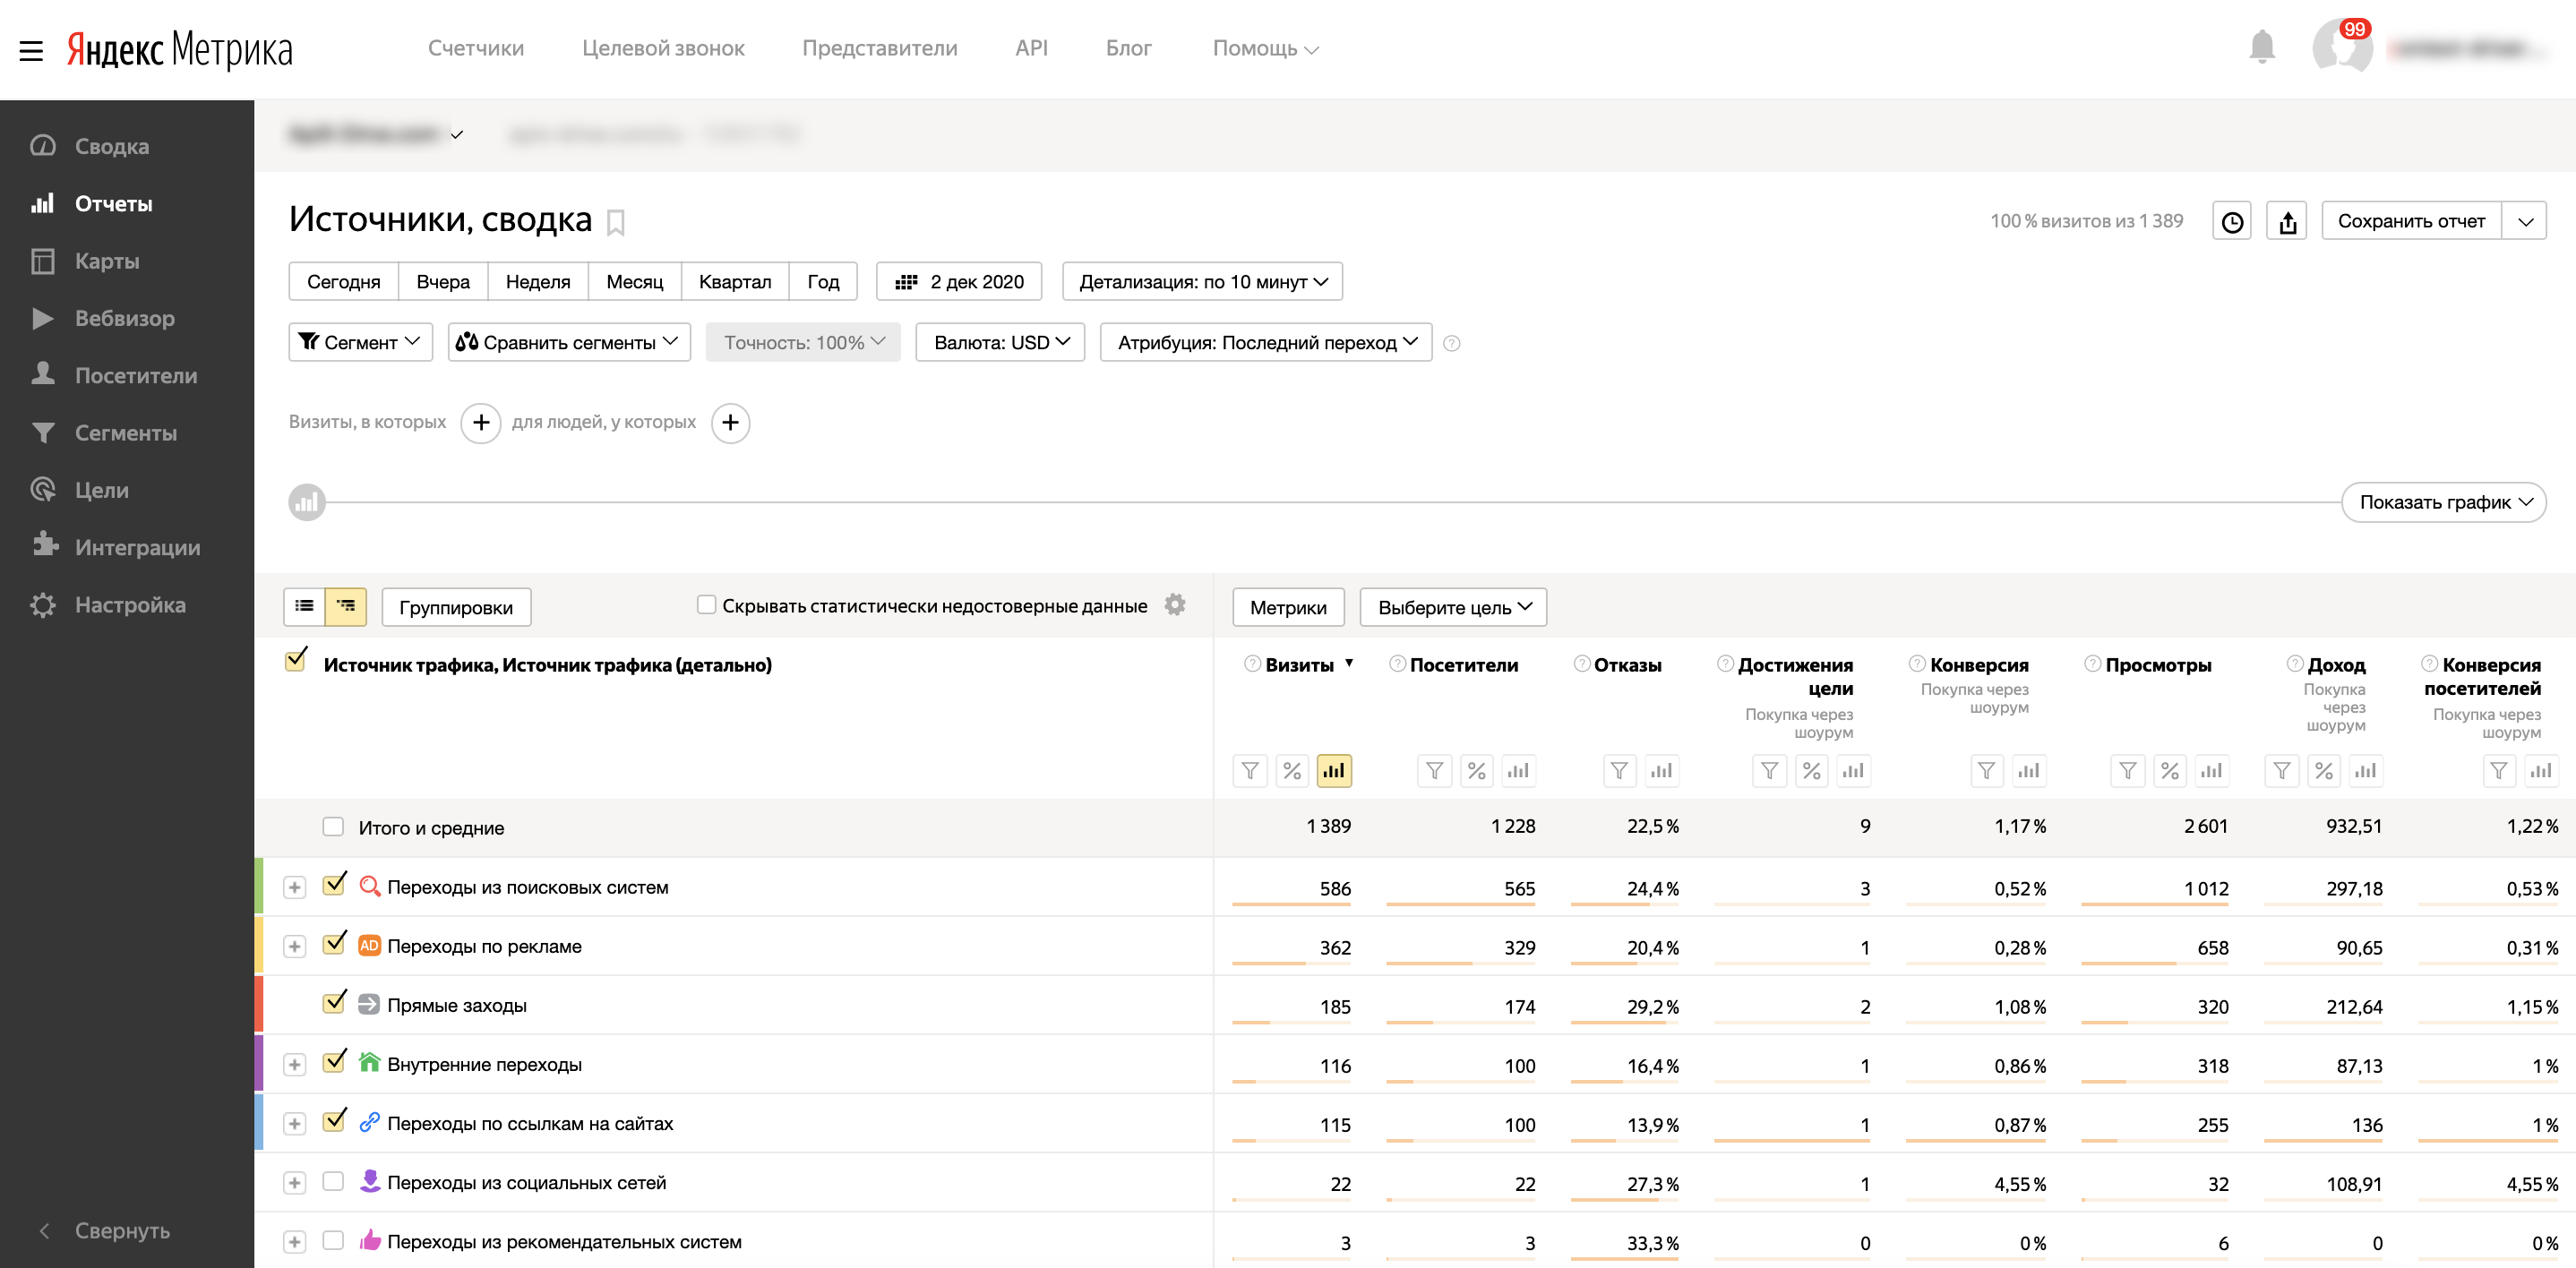 Передача данных по конверсиям из Bitrix24 в Яндекс.Метрику – это очень просто, если задействовать онлайн-коннектор приложений ApiX-Drive